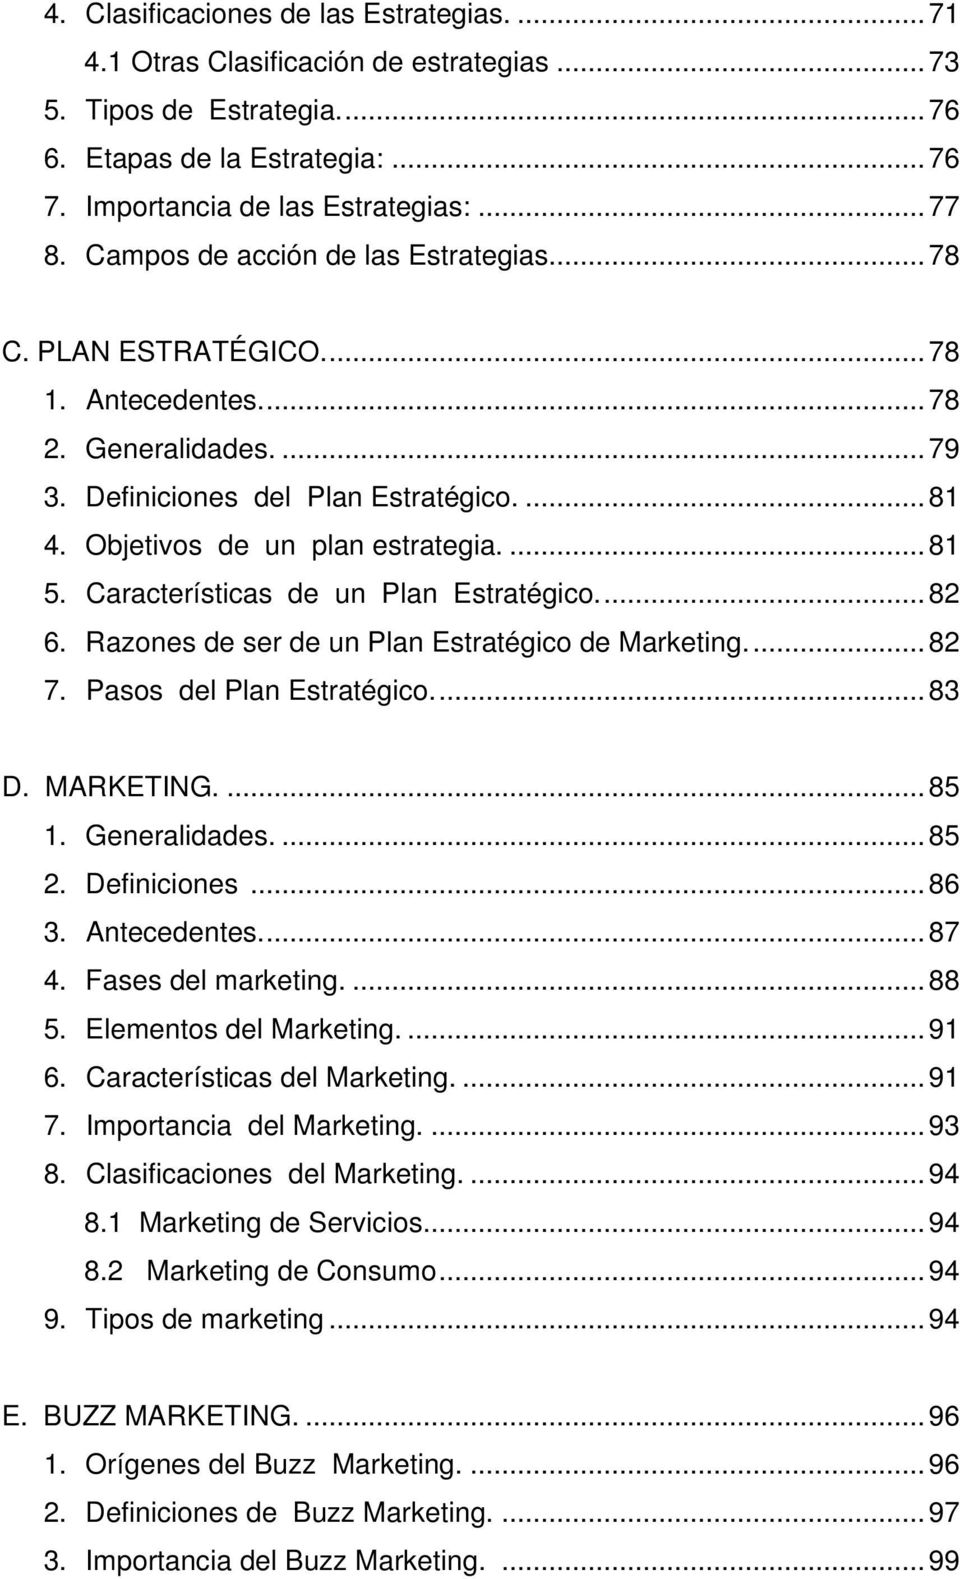 Características de un Plan Estratégico... 82 6. Razones de ser de un Plan Estratégico de Marketing... 82 7. Pasos del Plan Estratégico... 83 D. MARKETING....85 1. Generalidades....85 2. Definiciones.